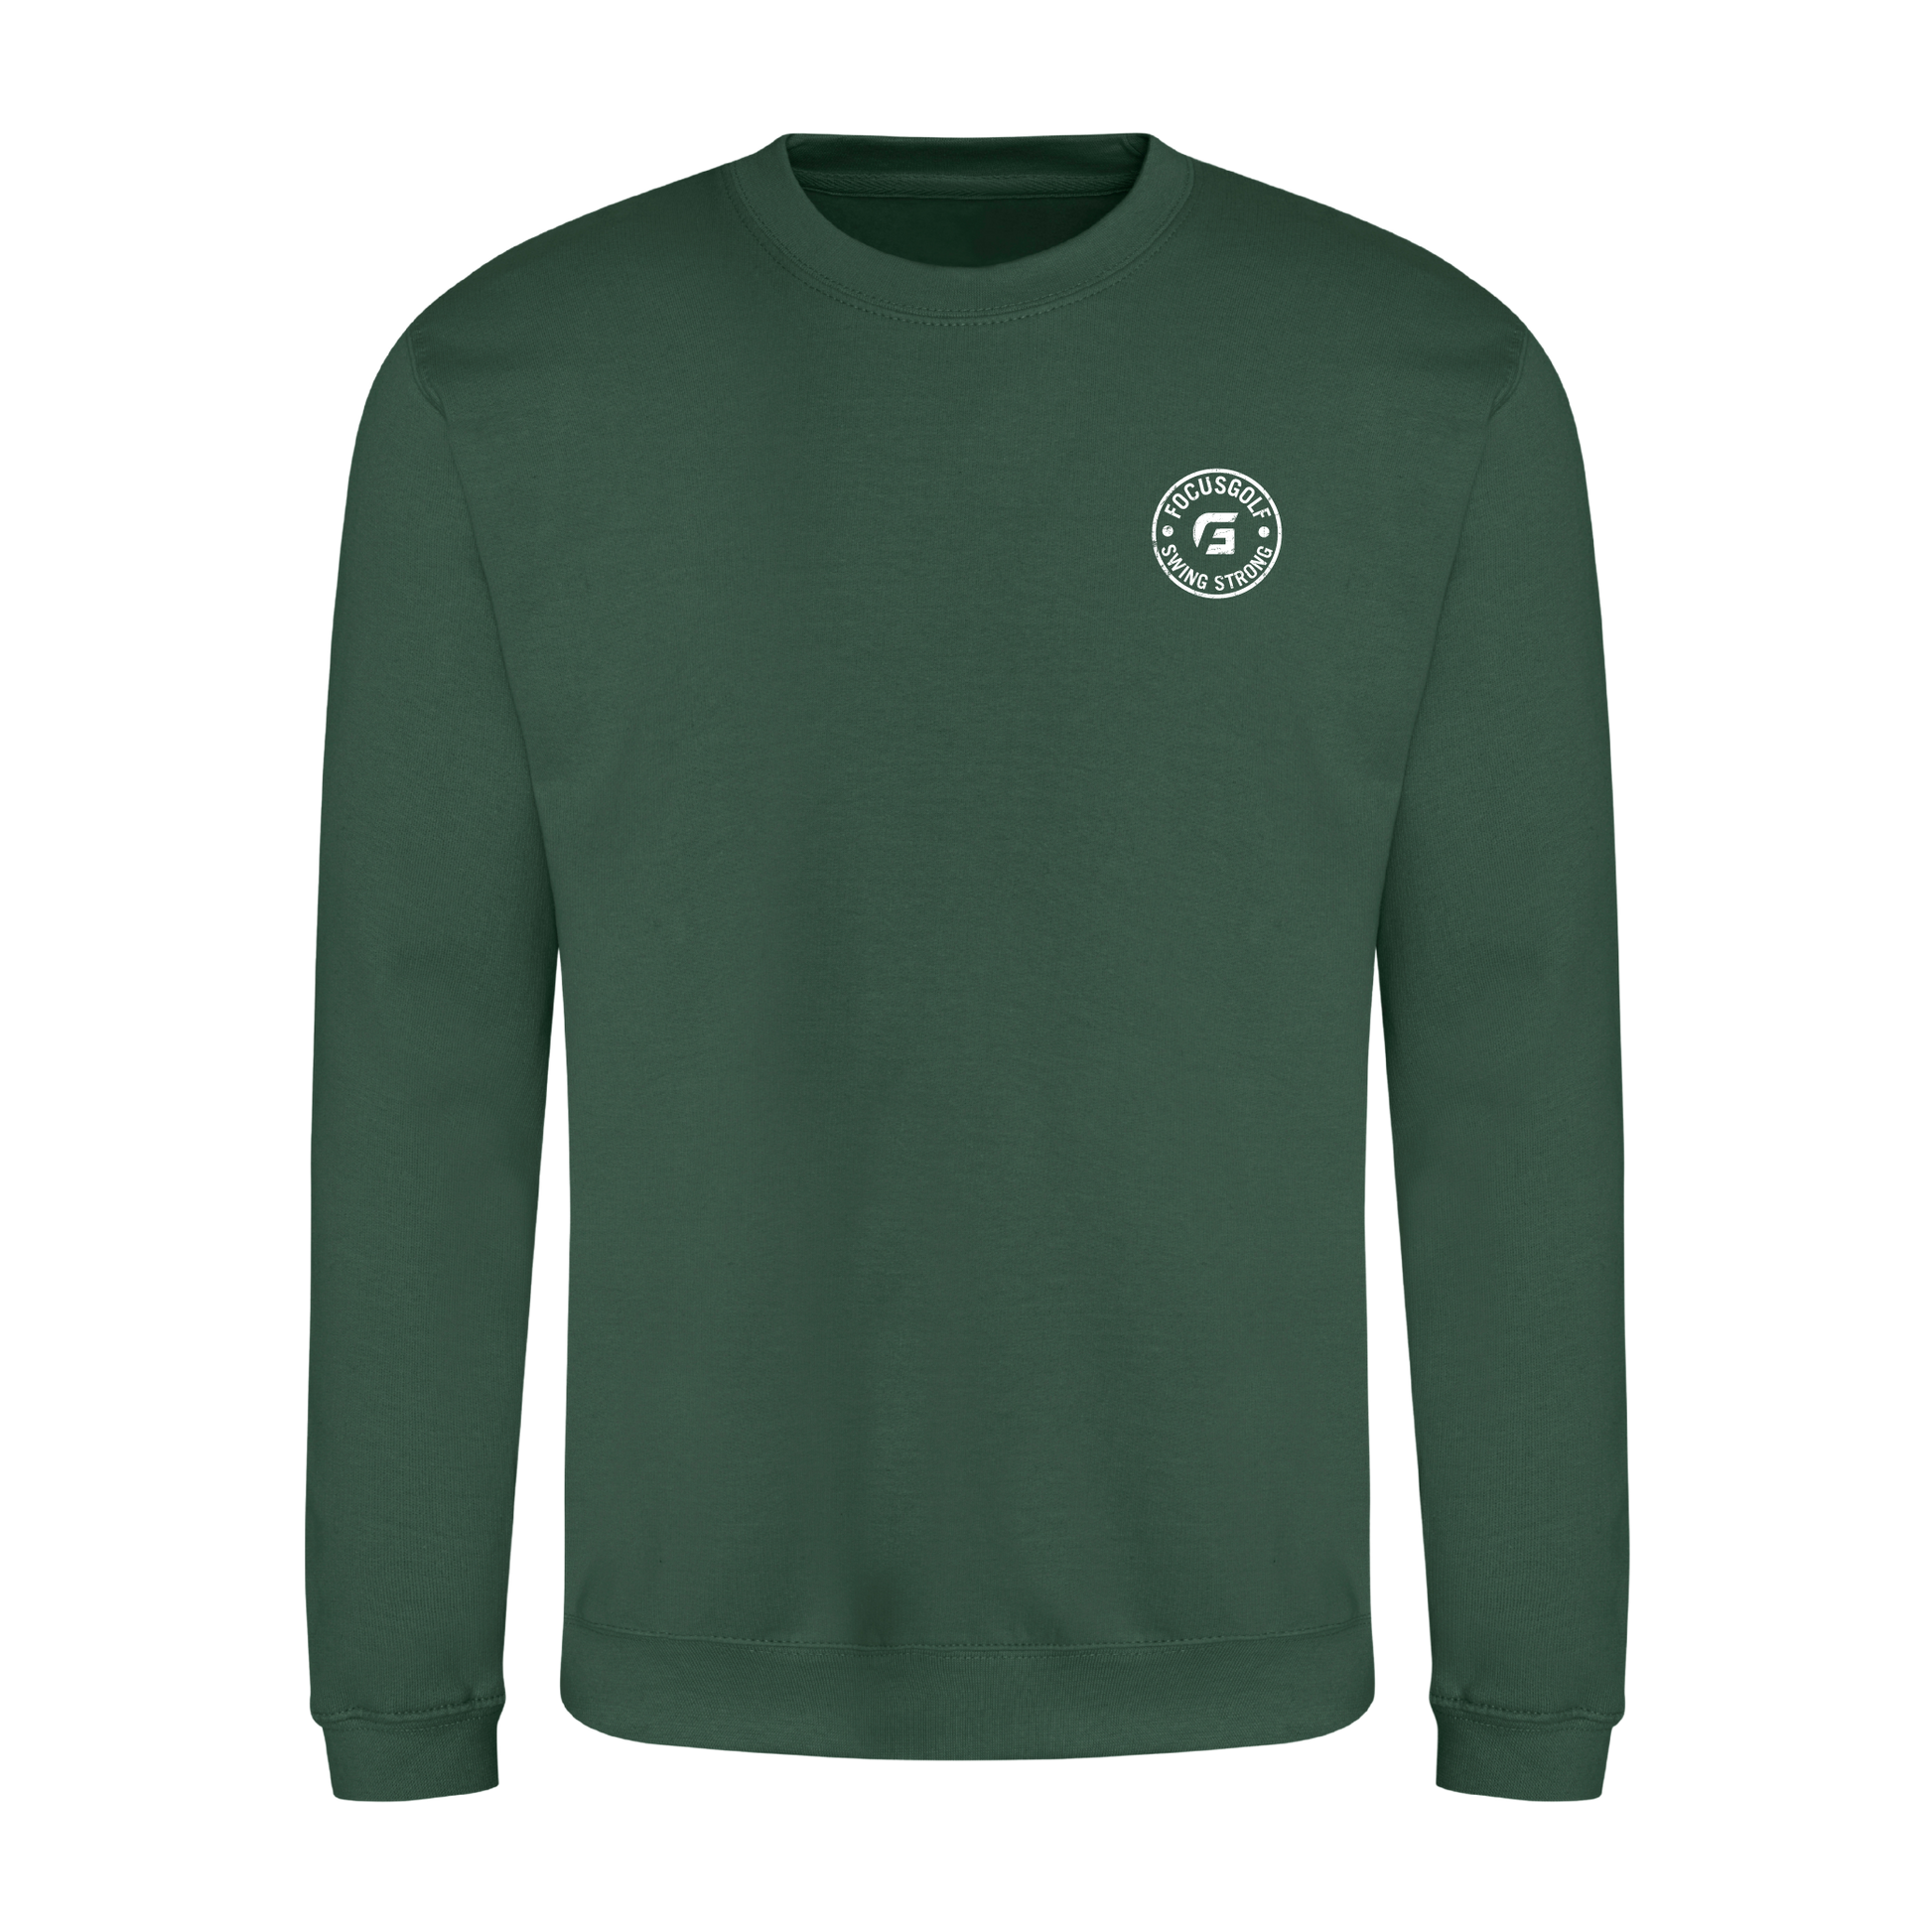 Focusgolf Honor Men's Bottle Green Sweatshirt